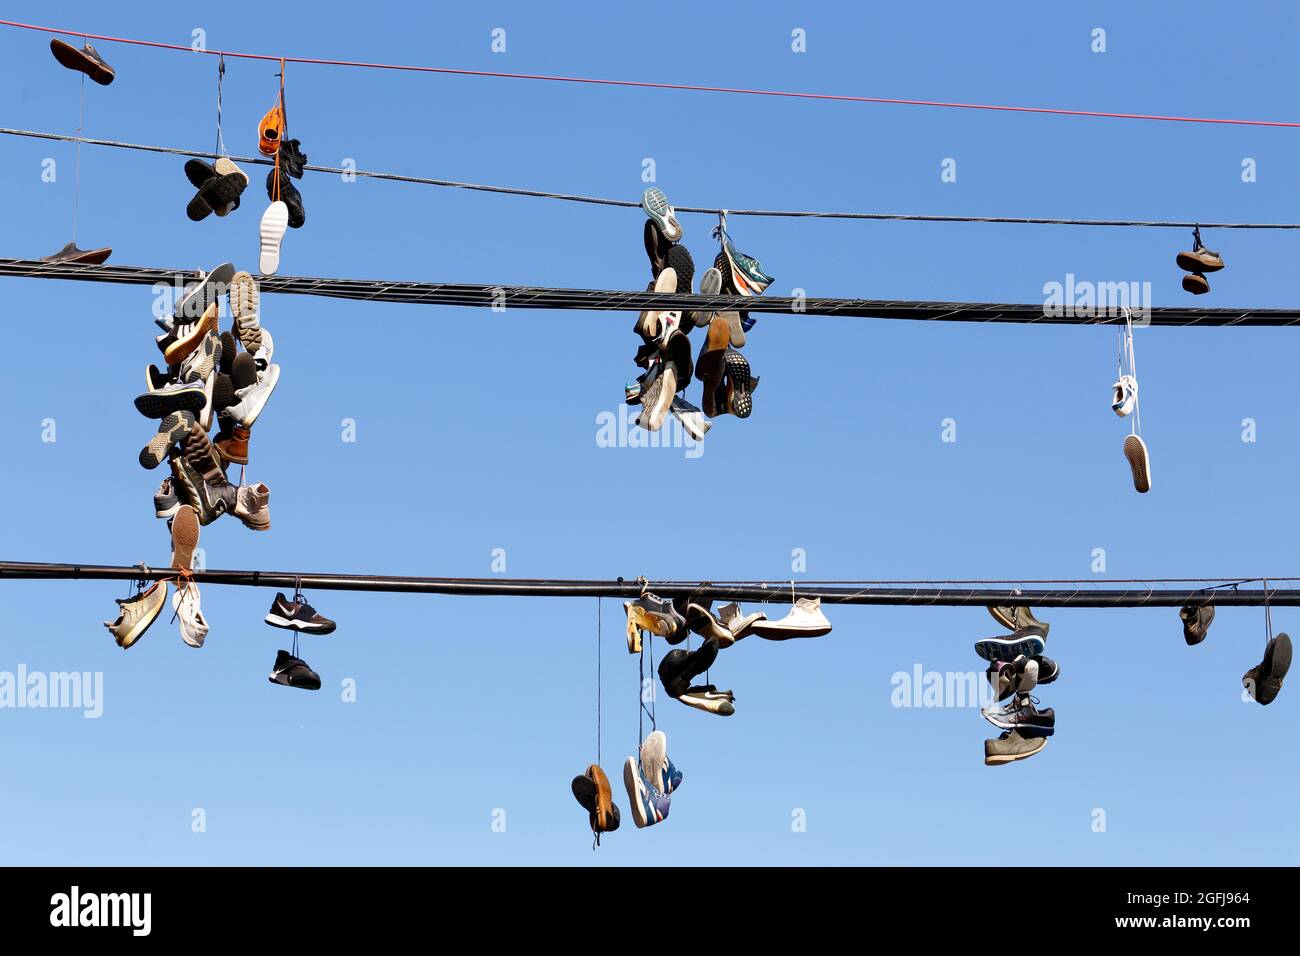 shoefiti, sneakers appese sul filo del telefono contro un cielo blu soleggiato; sneakers legati insieme e gettati sopra una linea elettrica. Foto Stock